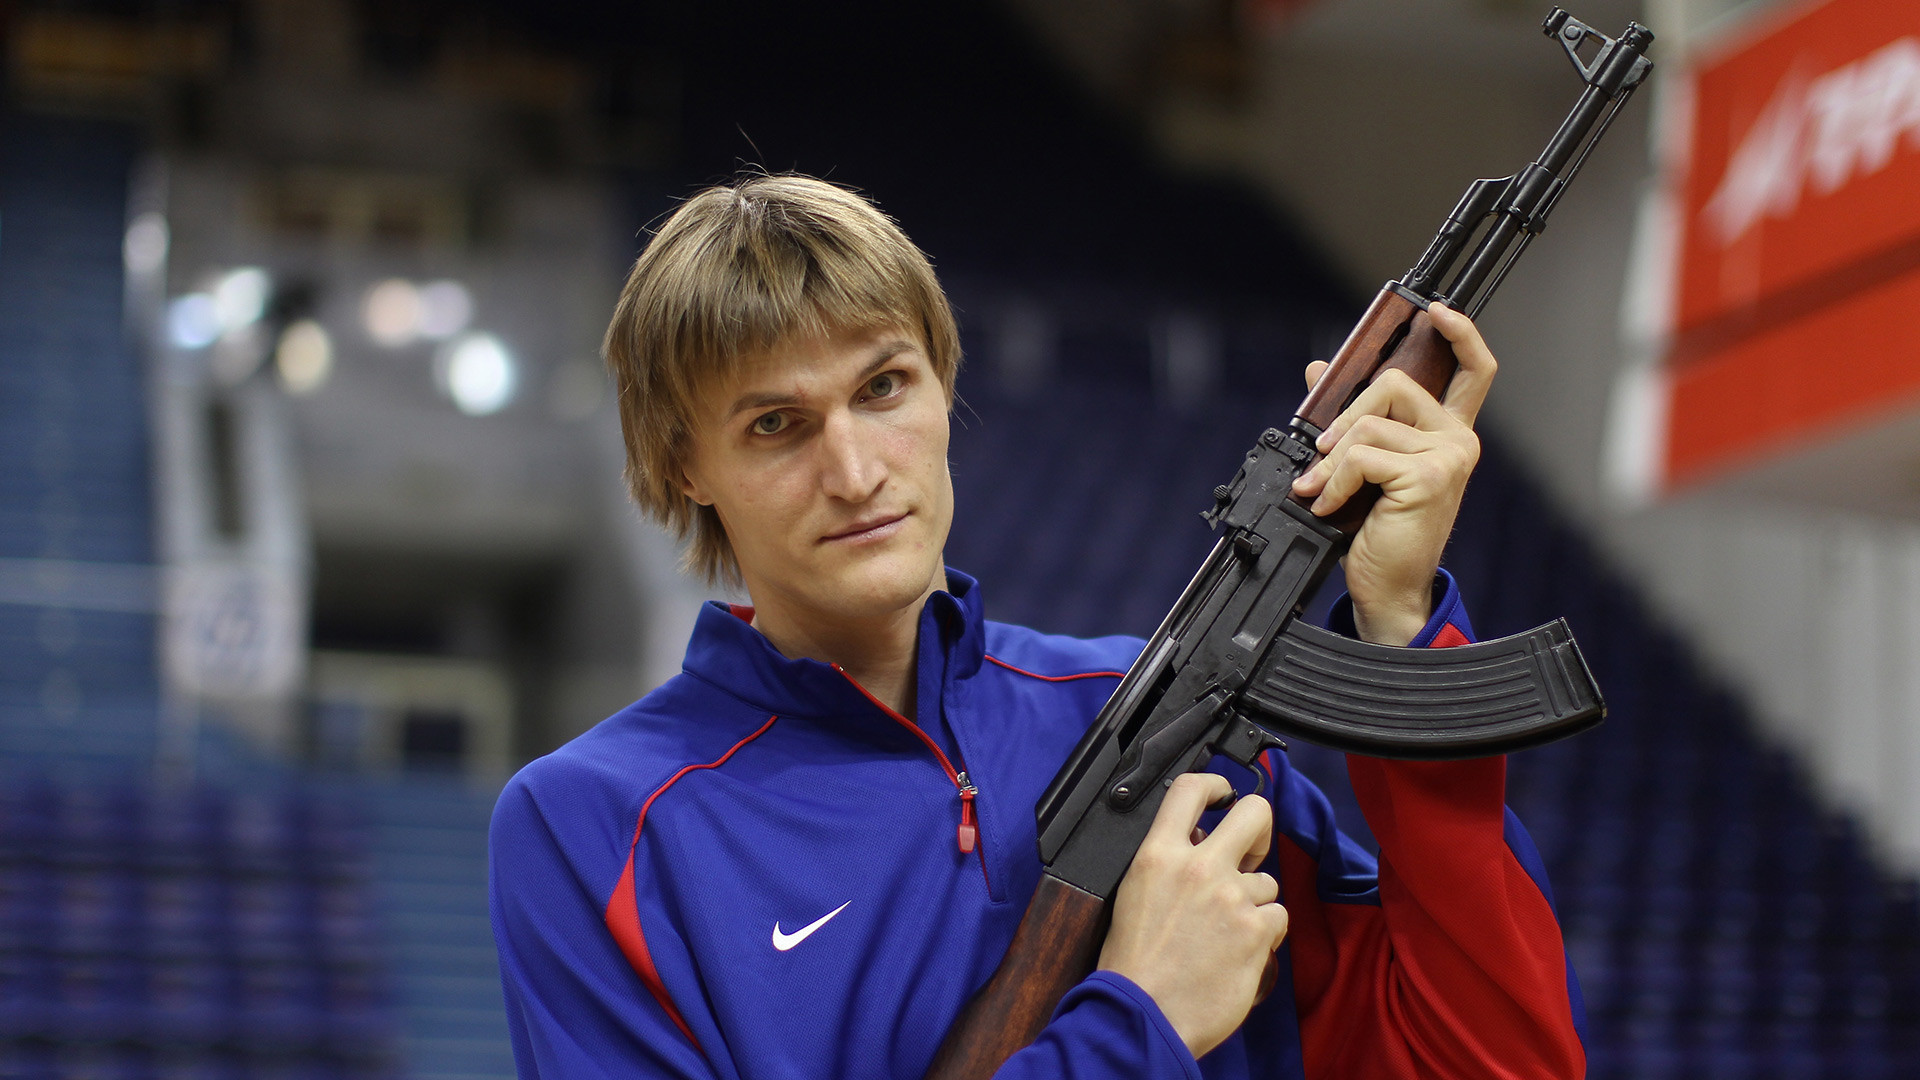 Košarkaška zvijezda Andrej Kirilenko s kalašnjikovom na snimanju za svoj novi tim